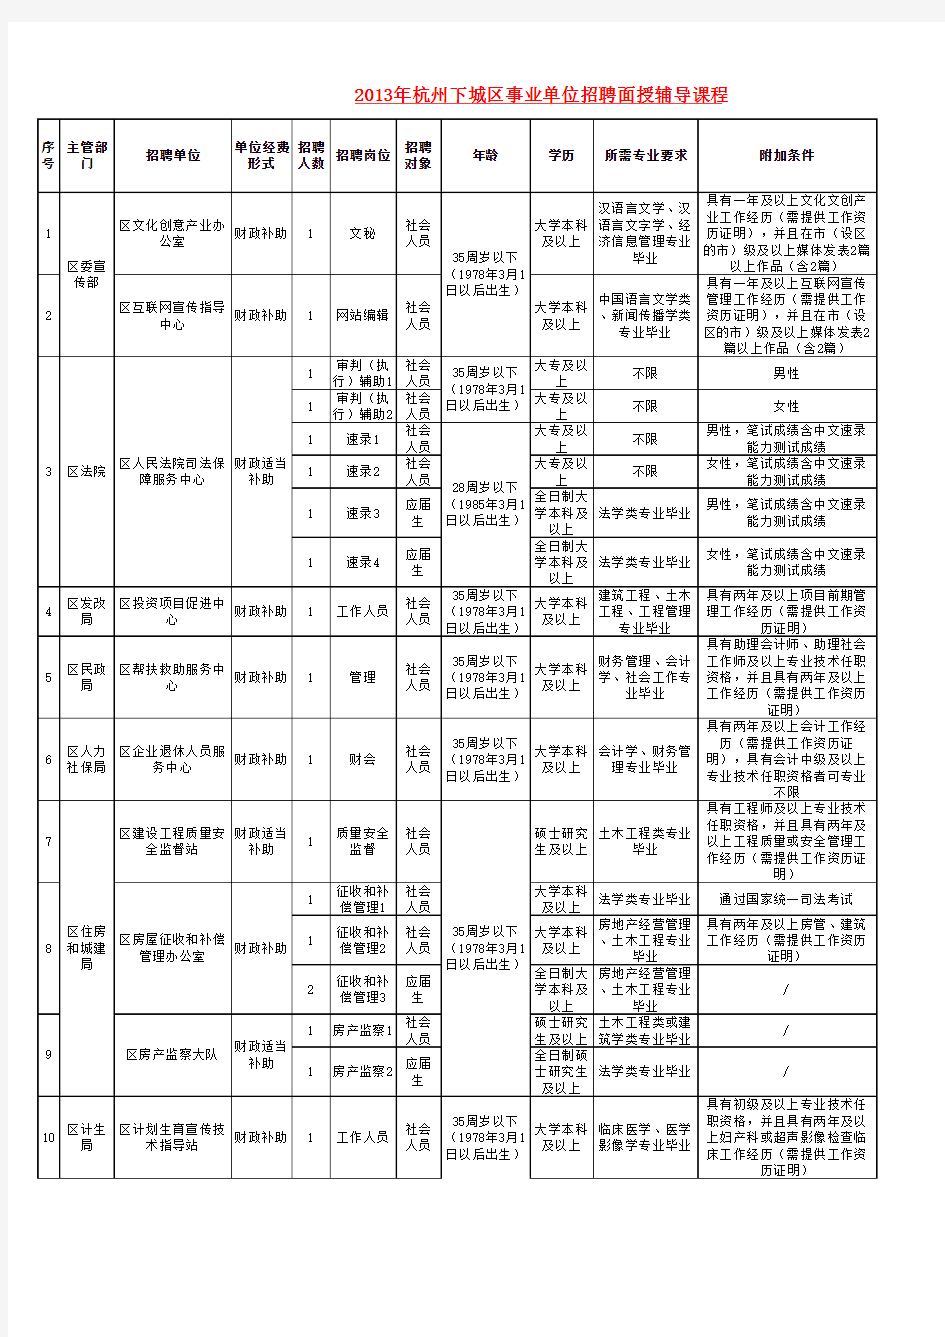 下城区人才网：2013杭州下城区事业单位公开招聘计划表